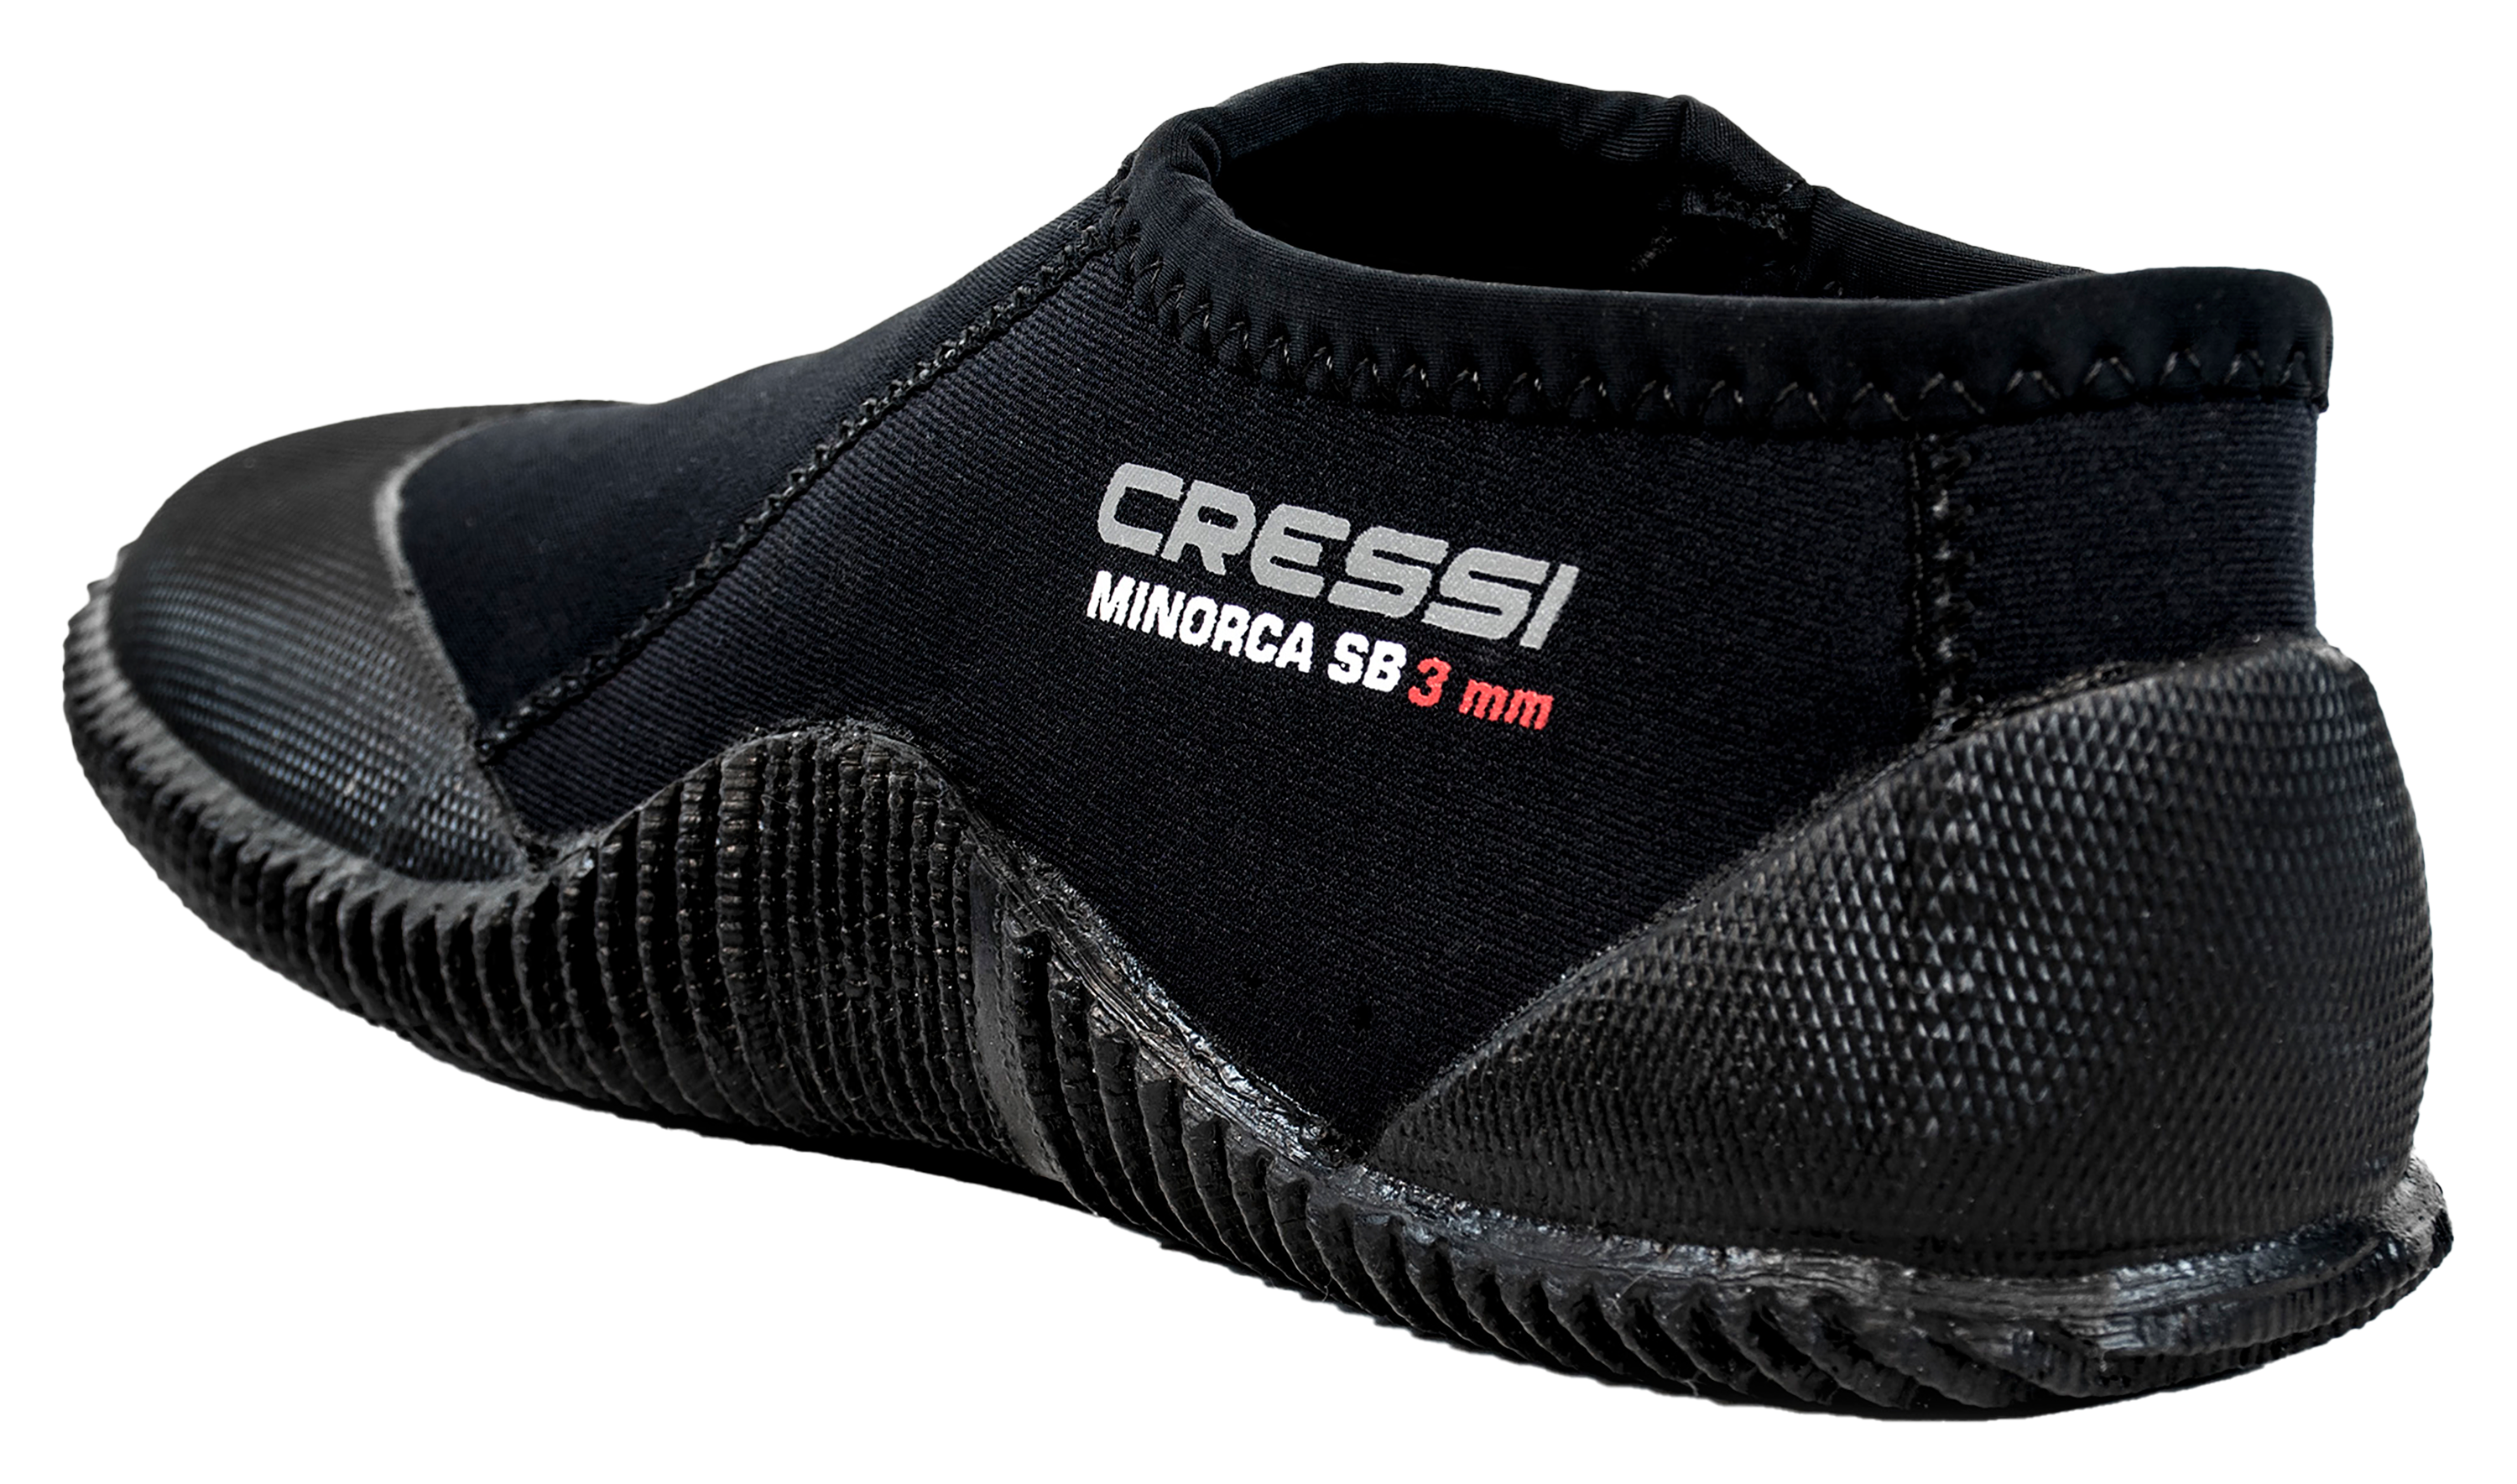 Cressi Minorca Short Boots for Men - Black - 13